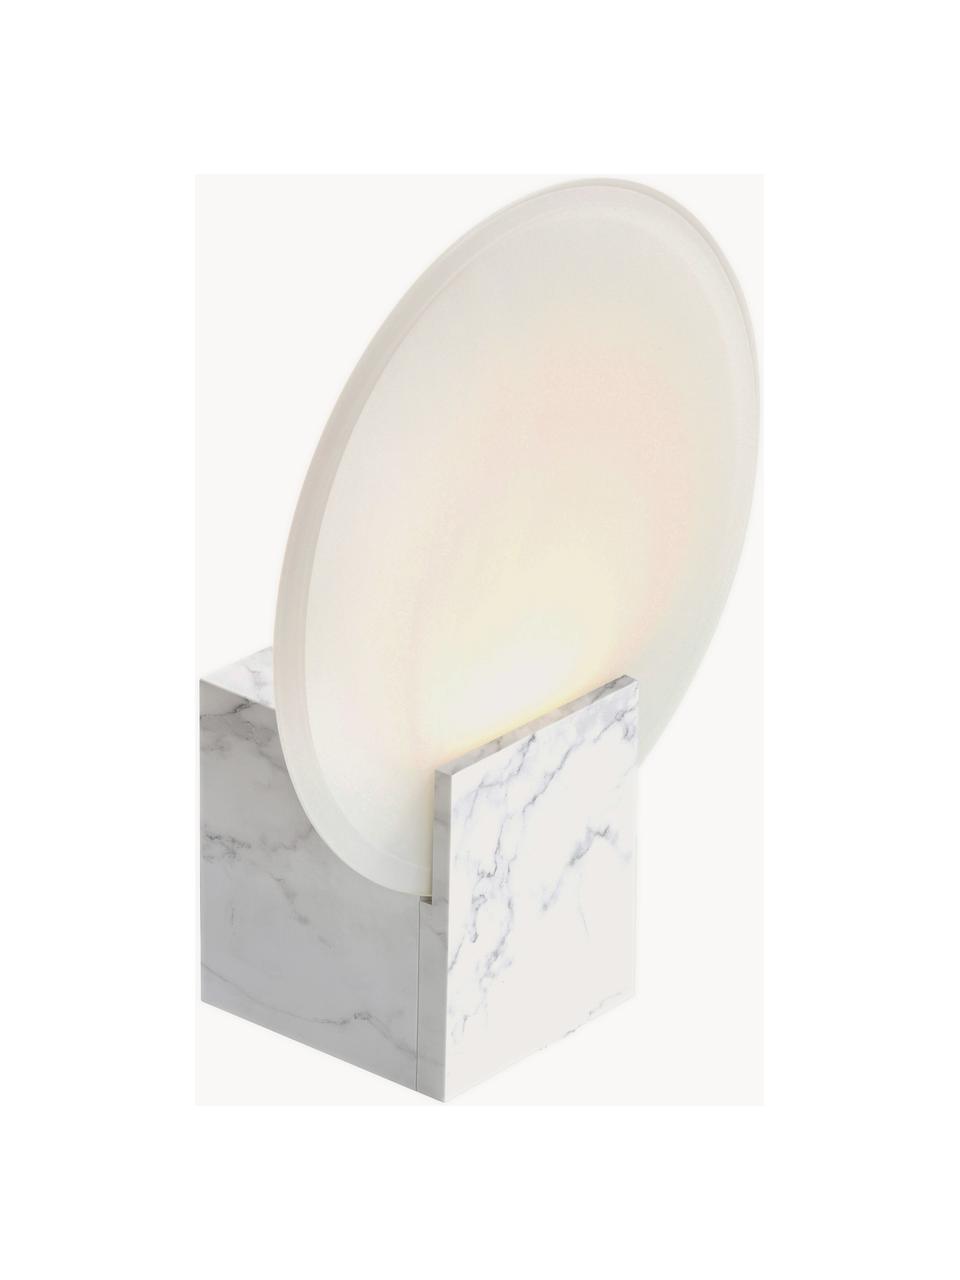 Dimbare LED wandlamp Hester, Lampenkap: glas, Gebroken wit, marmerlook, B 20 x H 26 cm